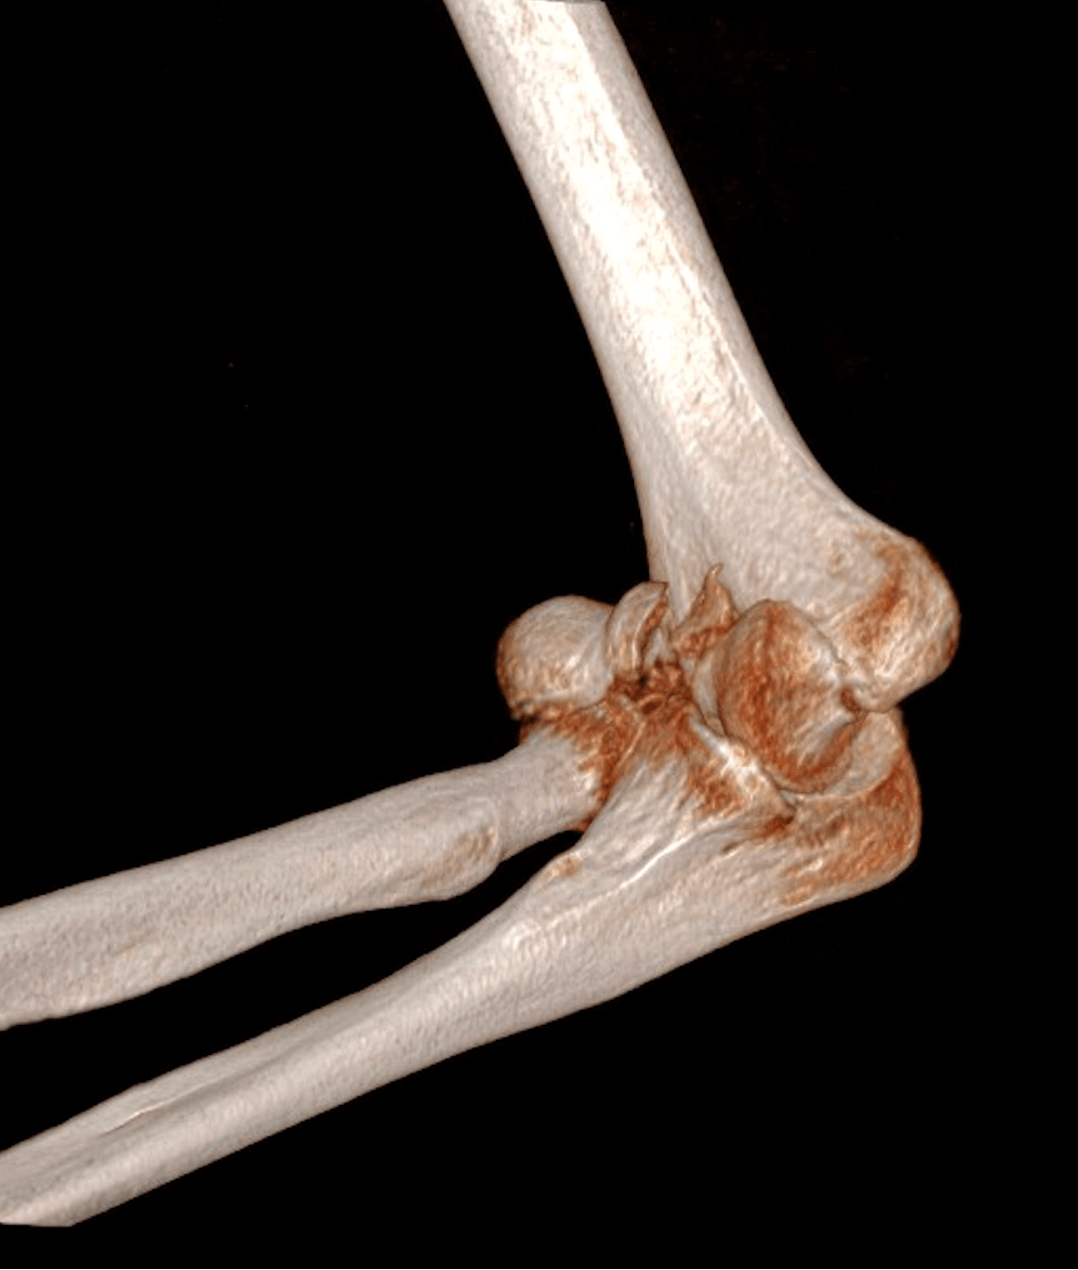 Fracture complexe de l’extrémité inférieure de l’humérus chez une personne âgée